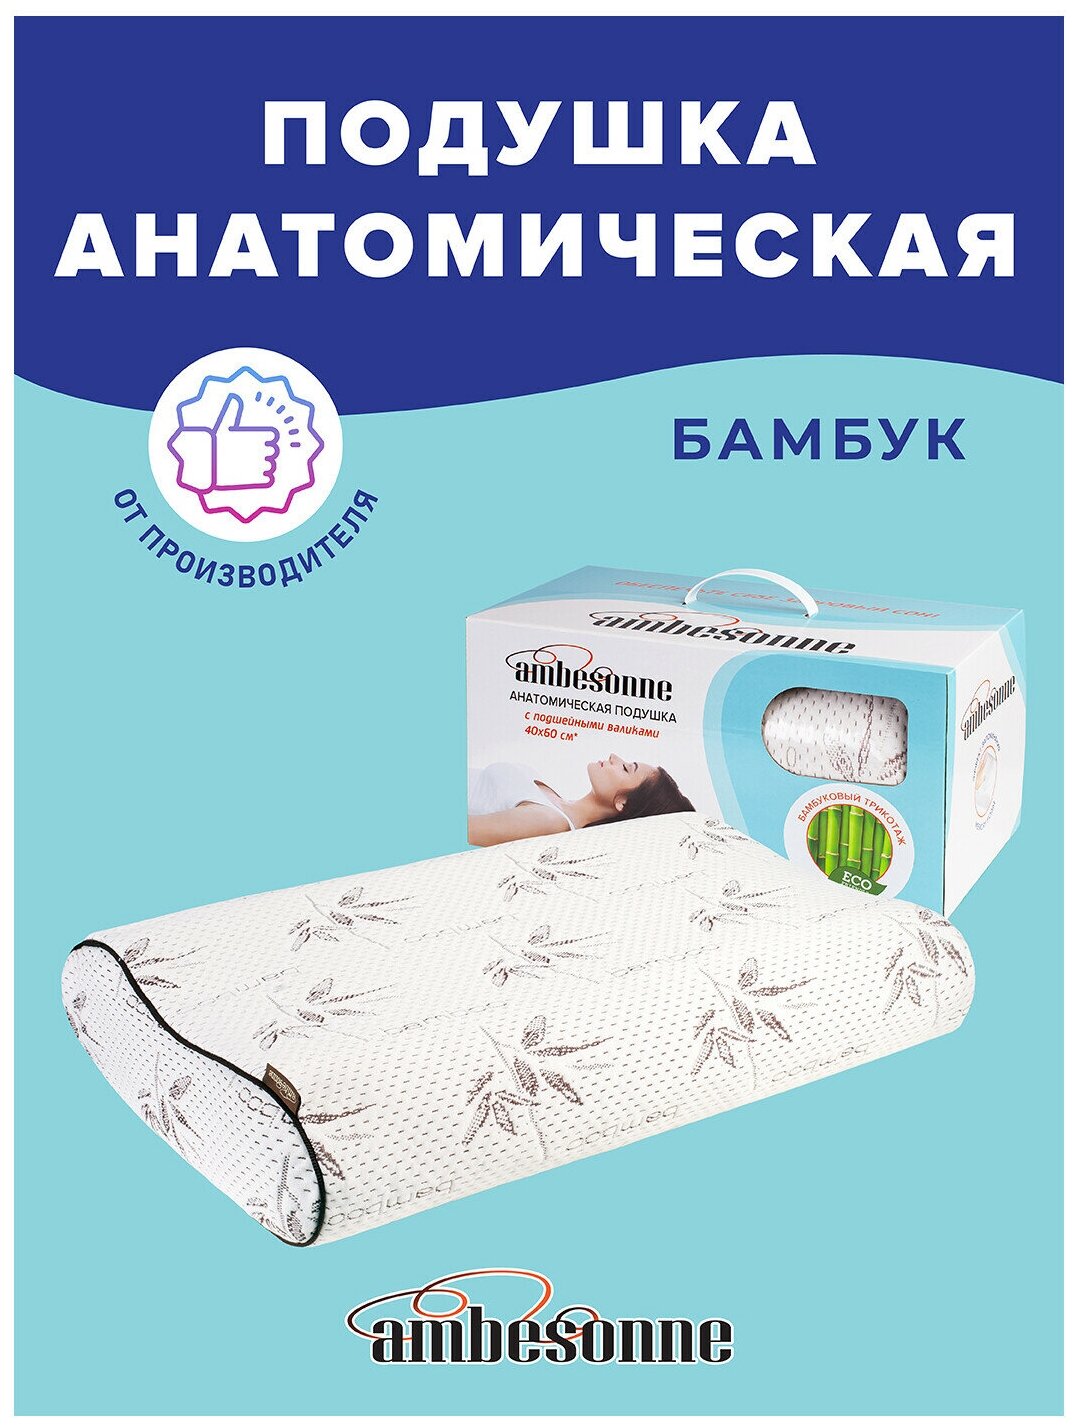 Подушка анатомическая Ambesonne с подшейными валиками, ортопедическая, с эффектом памяти Memory Foam и чехлом из бамбукового трикотажа, 60x40см